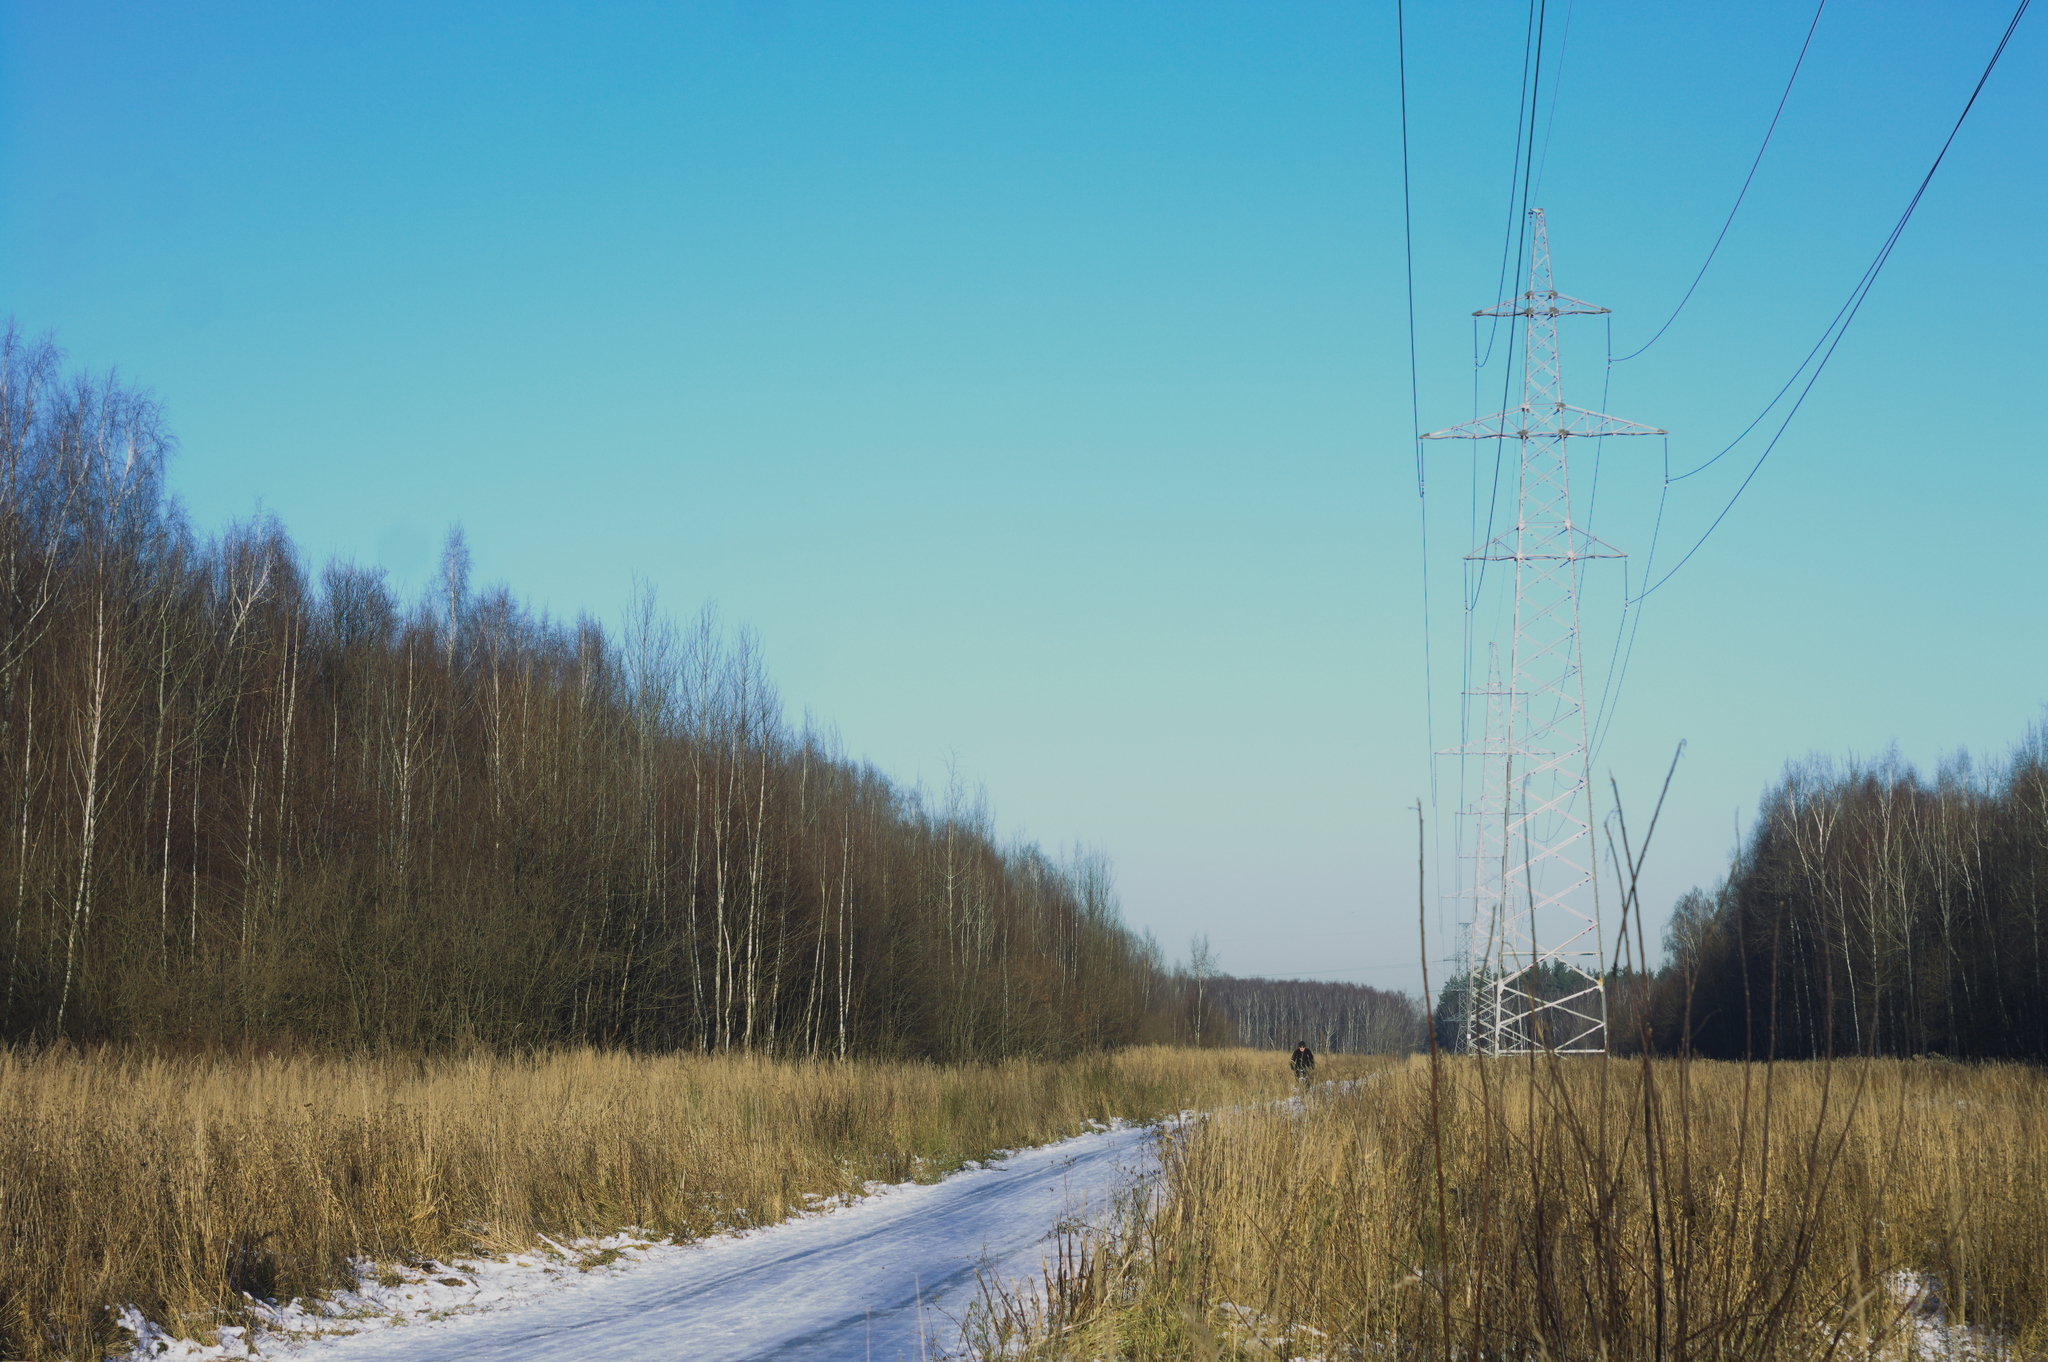 40 km of winter silence - My, A bike, PVD, Winter Bike, Winter, Moscow region, Video blog, Video, Longpost